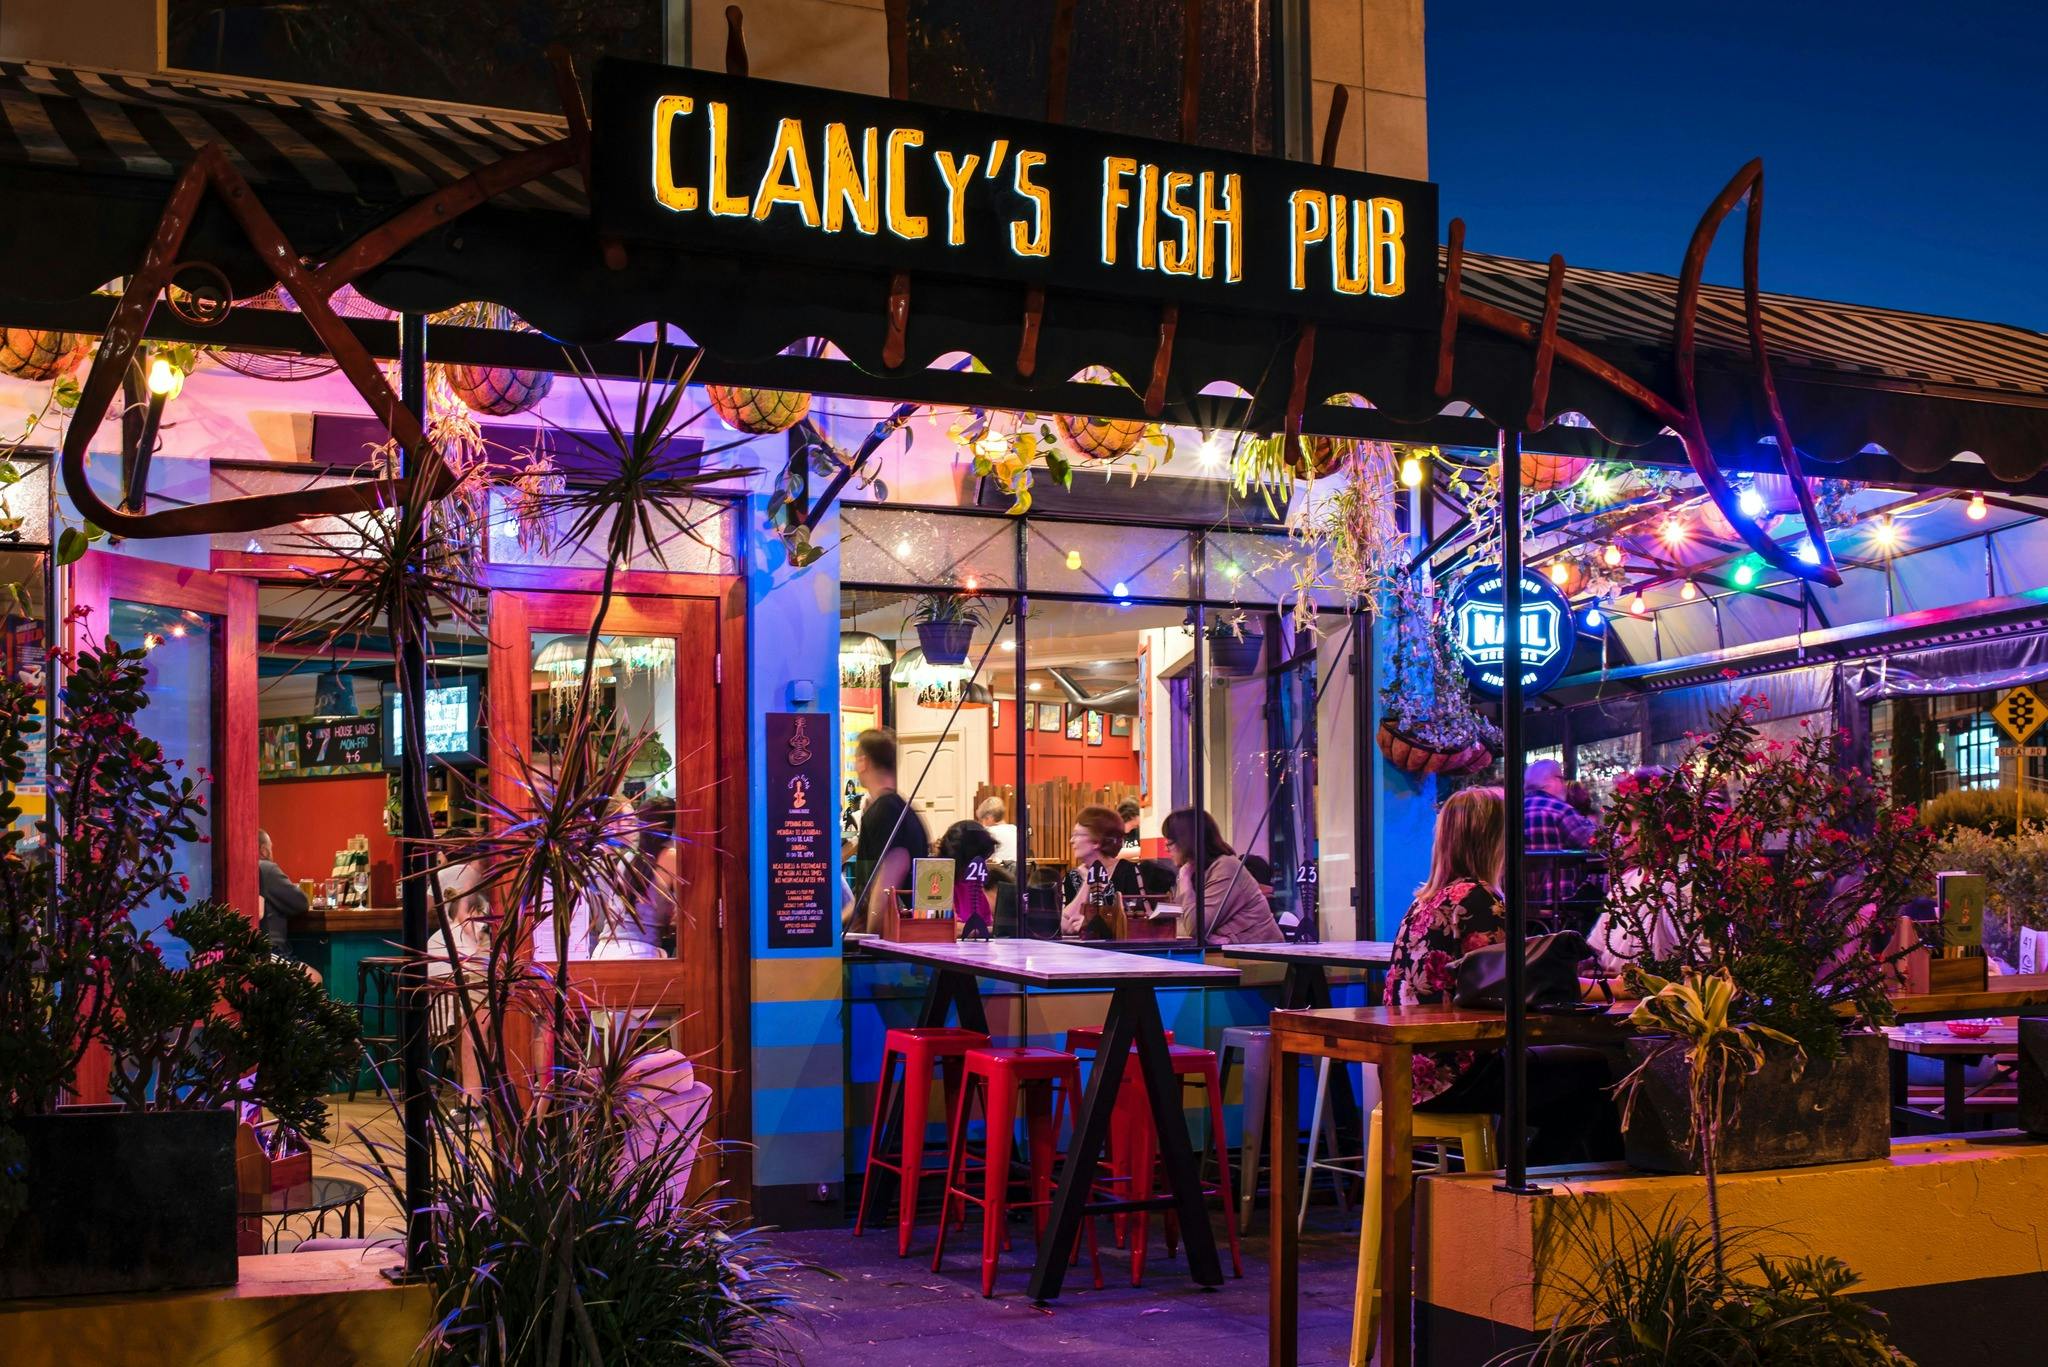 Clancy's Fish Pub Canning Bridge Applecross closure